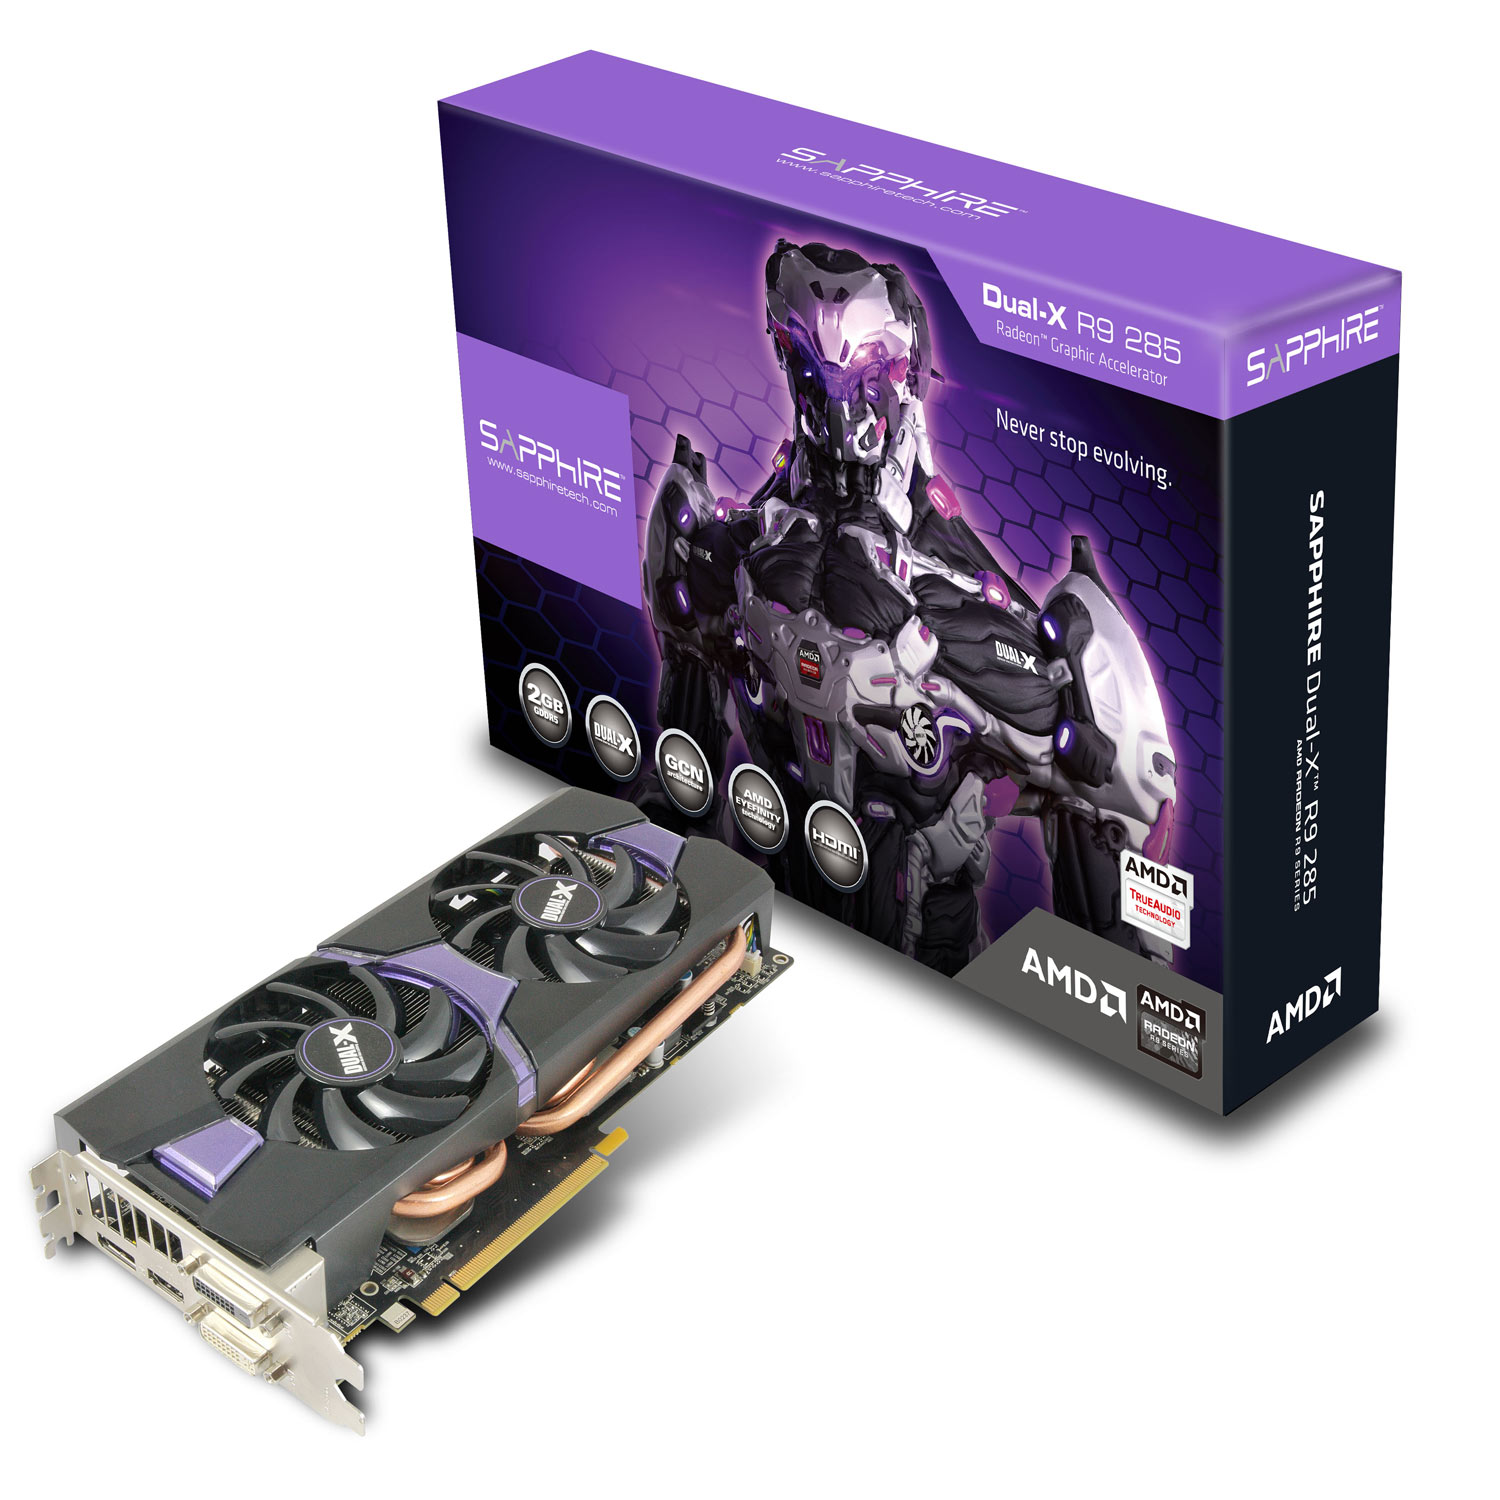 Immagine pubblicata in relazione al seguente contenuto: AMD riduce il prezzo della video card Radeon R9 285 | Nome immagine: news22546_SAPPHIRE-Radeon-R9-285_1.jpg